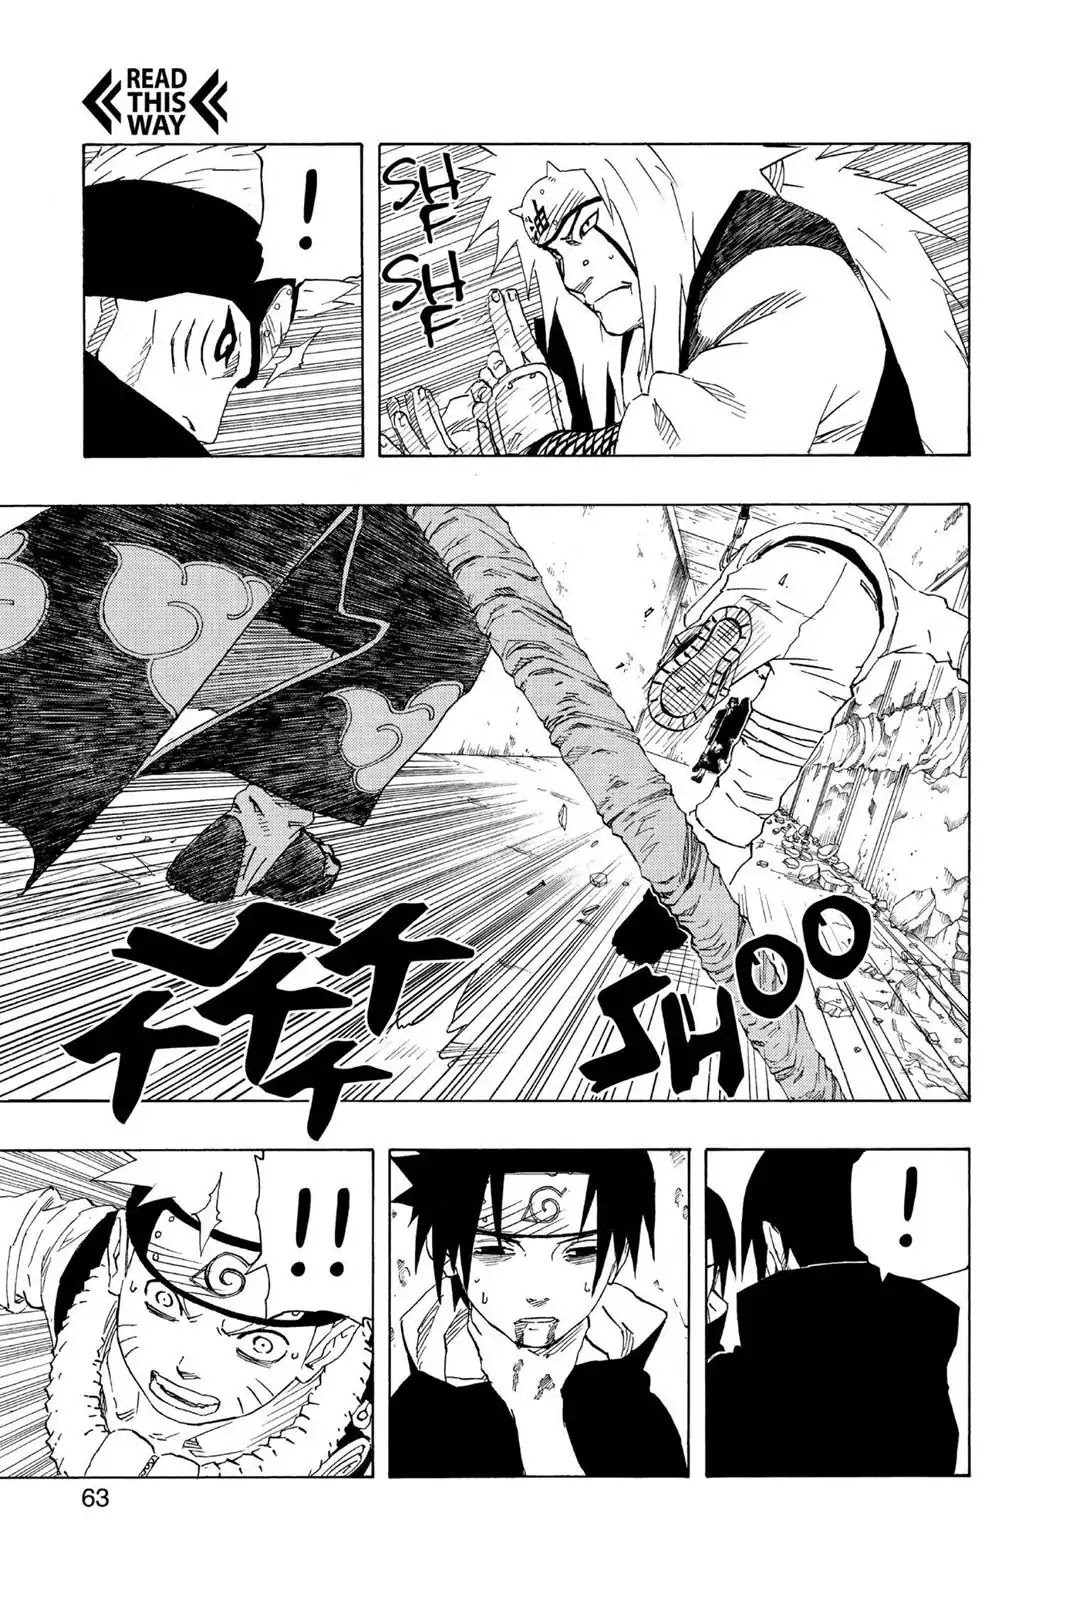 Jiraiya fazer frente a Itachi + Kisame não faz sentido para você? - Página 3 017